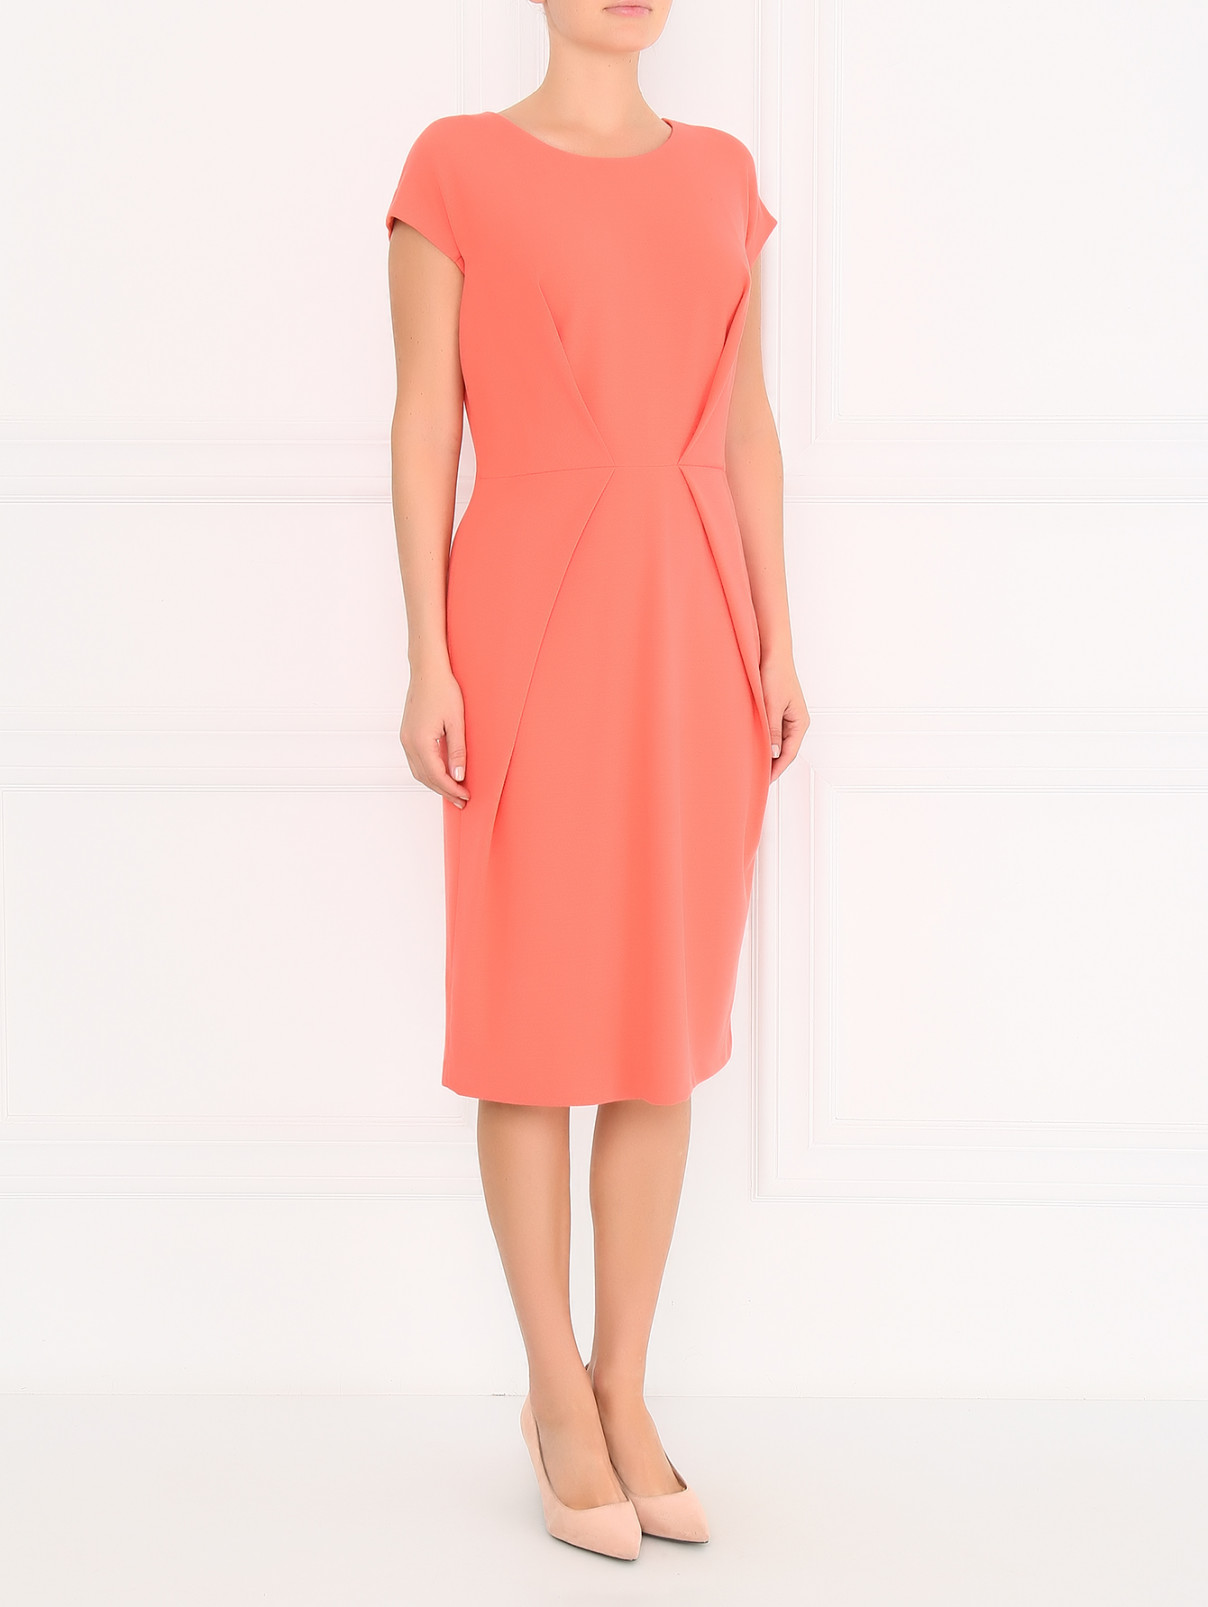 Платье-футляр с драпировкой Armani Collezioni  –  Модель Общий вид  – Цвет:  Красный